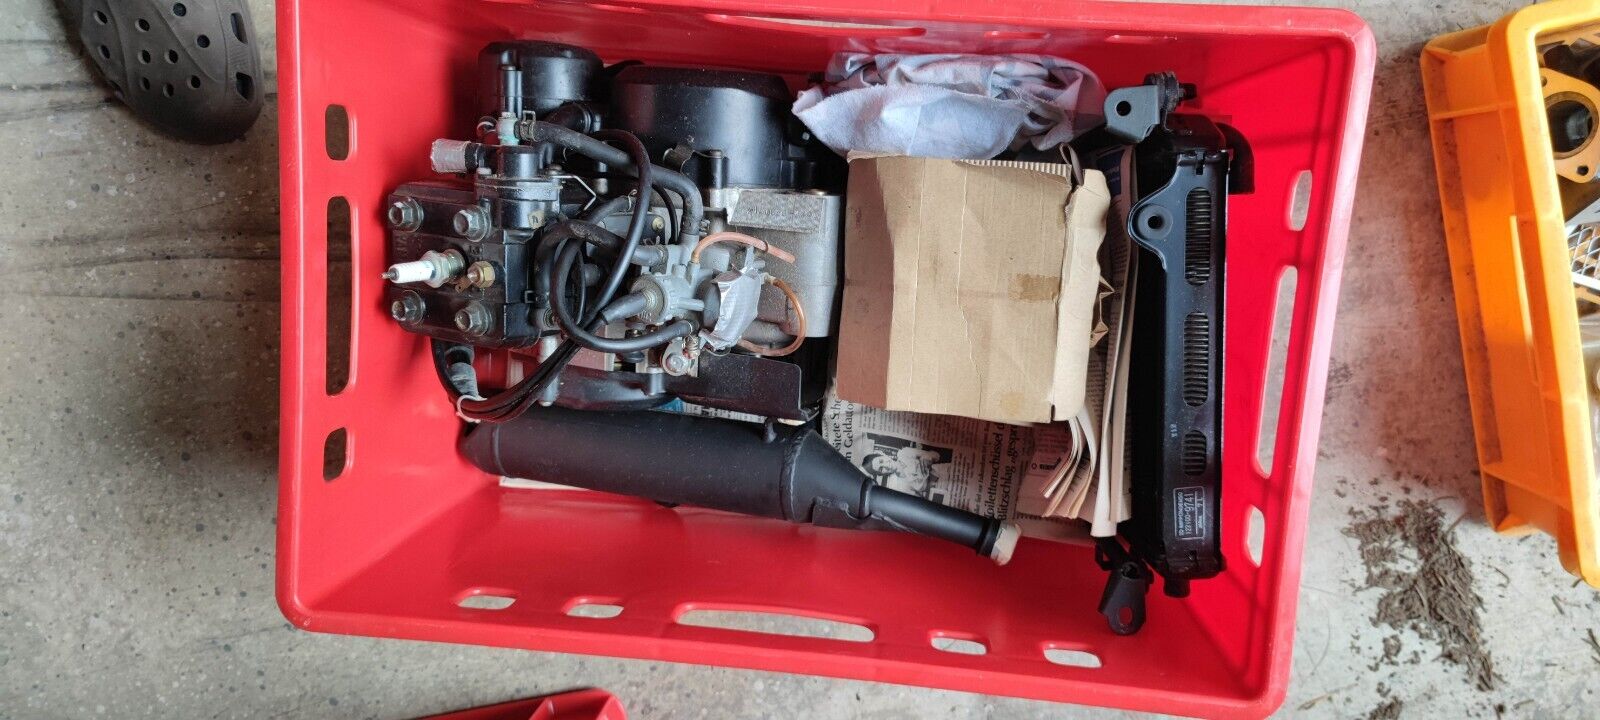 NOS Ersatzteile parts Yamaha DT80LC2 LCII 1x Auspuff Schalldaempfer muffler pipe 4